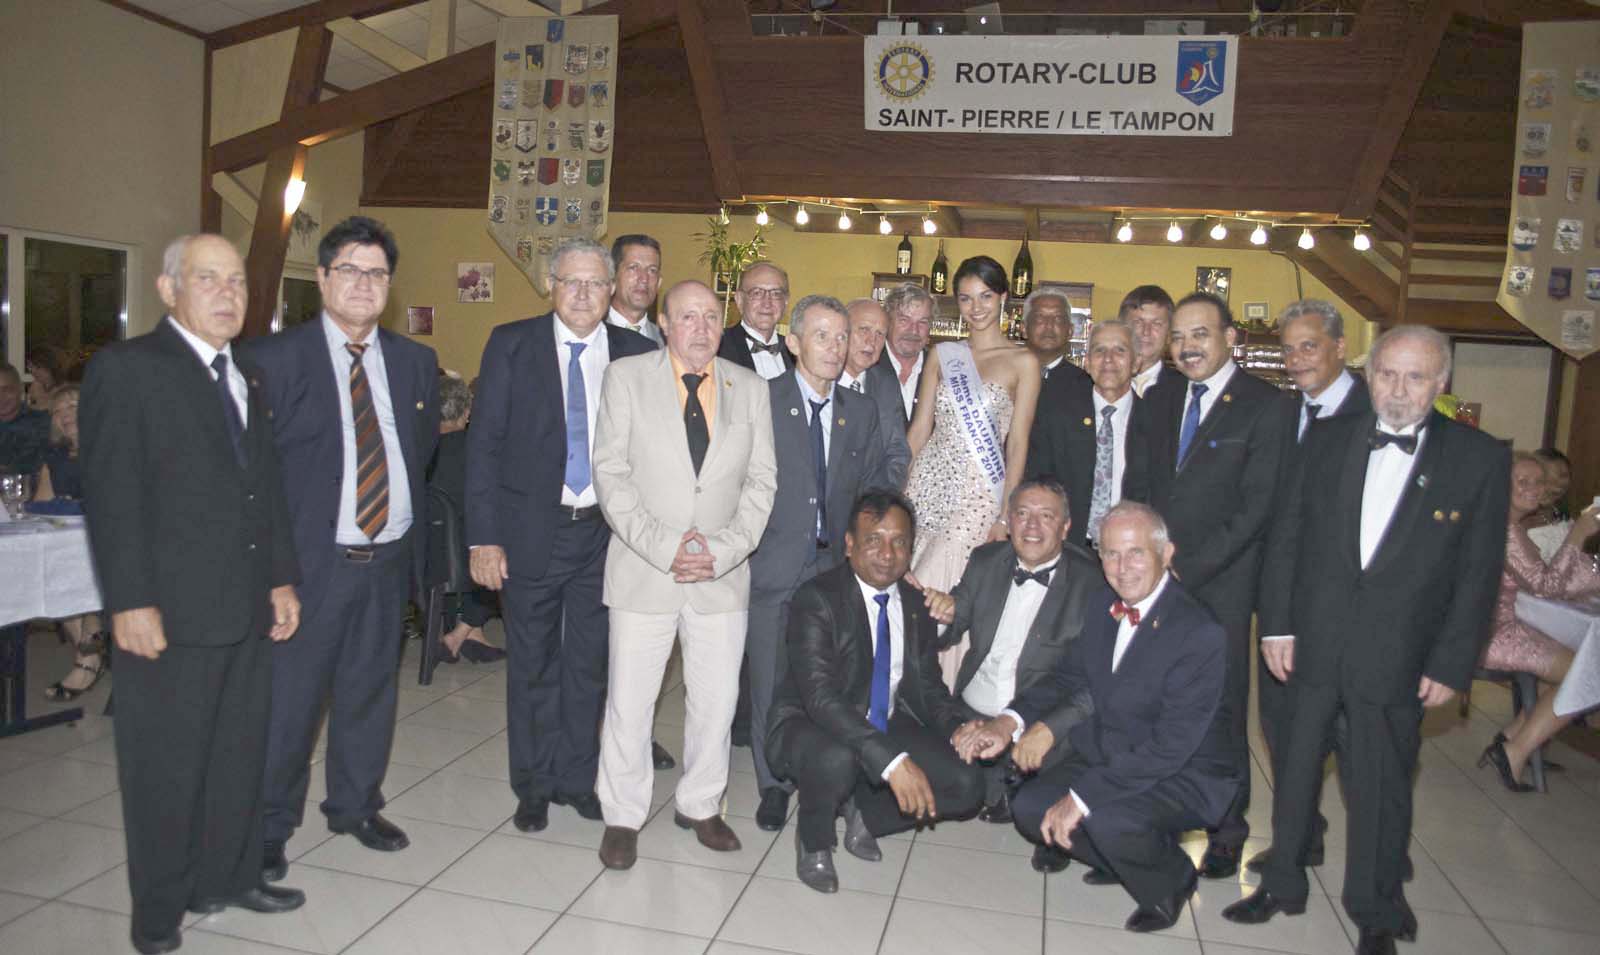 Les membres du Rotary Club Saint-Pierre/Le Tampon, avec le Gouverneur et avec Miss Réunion